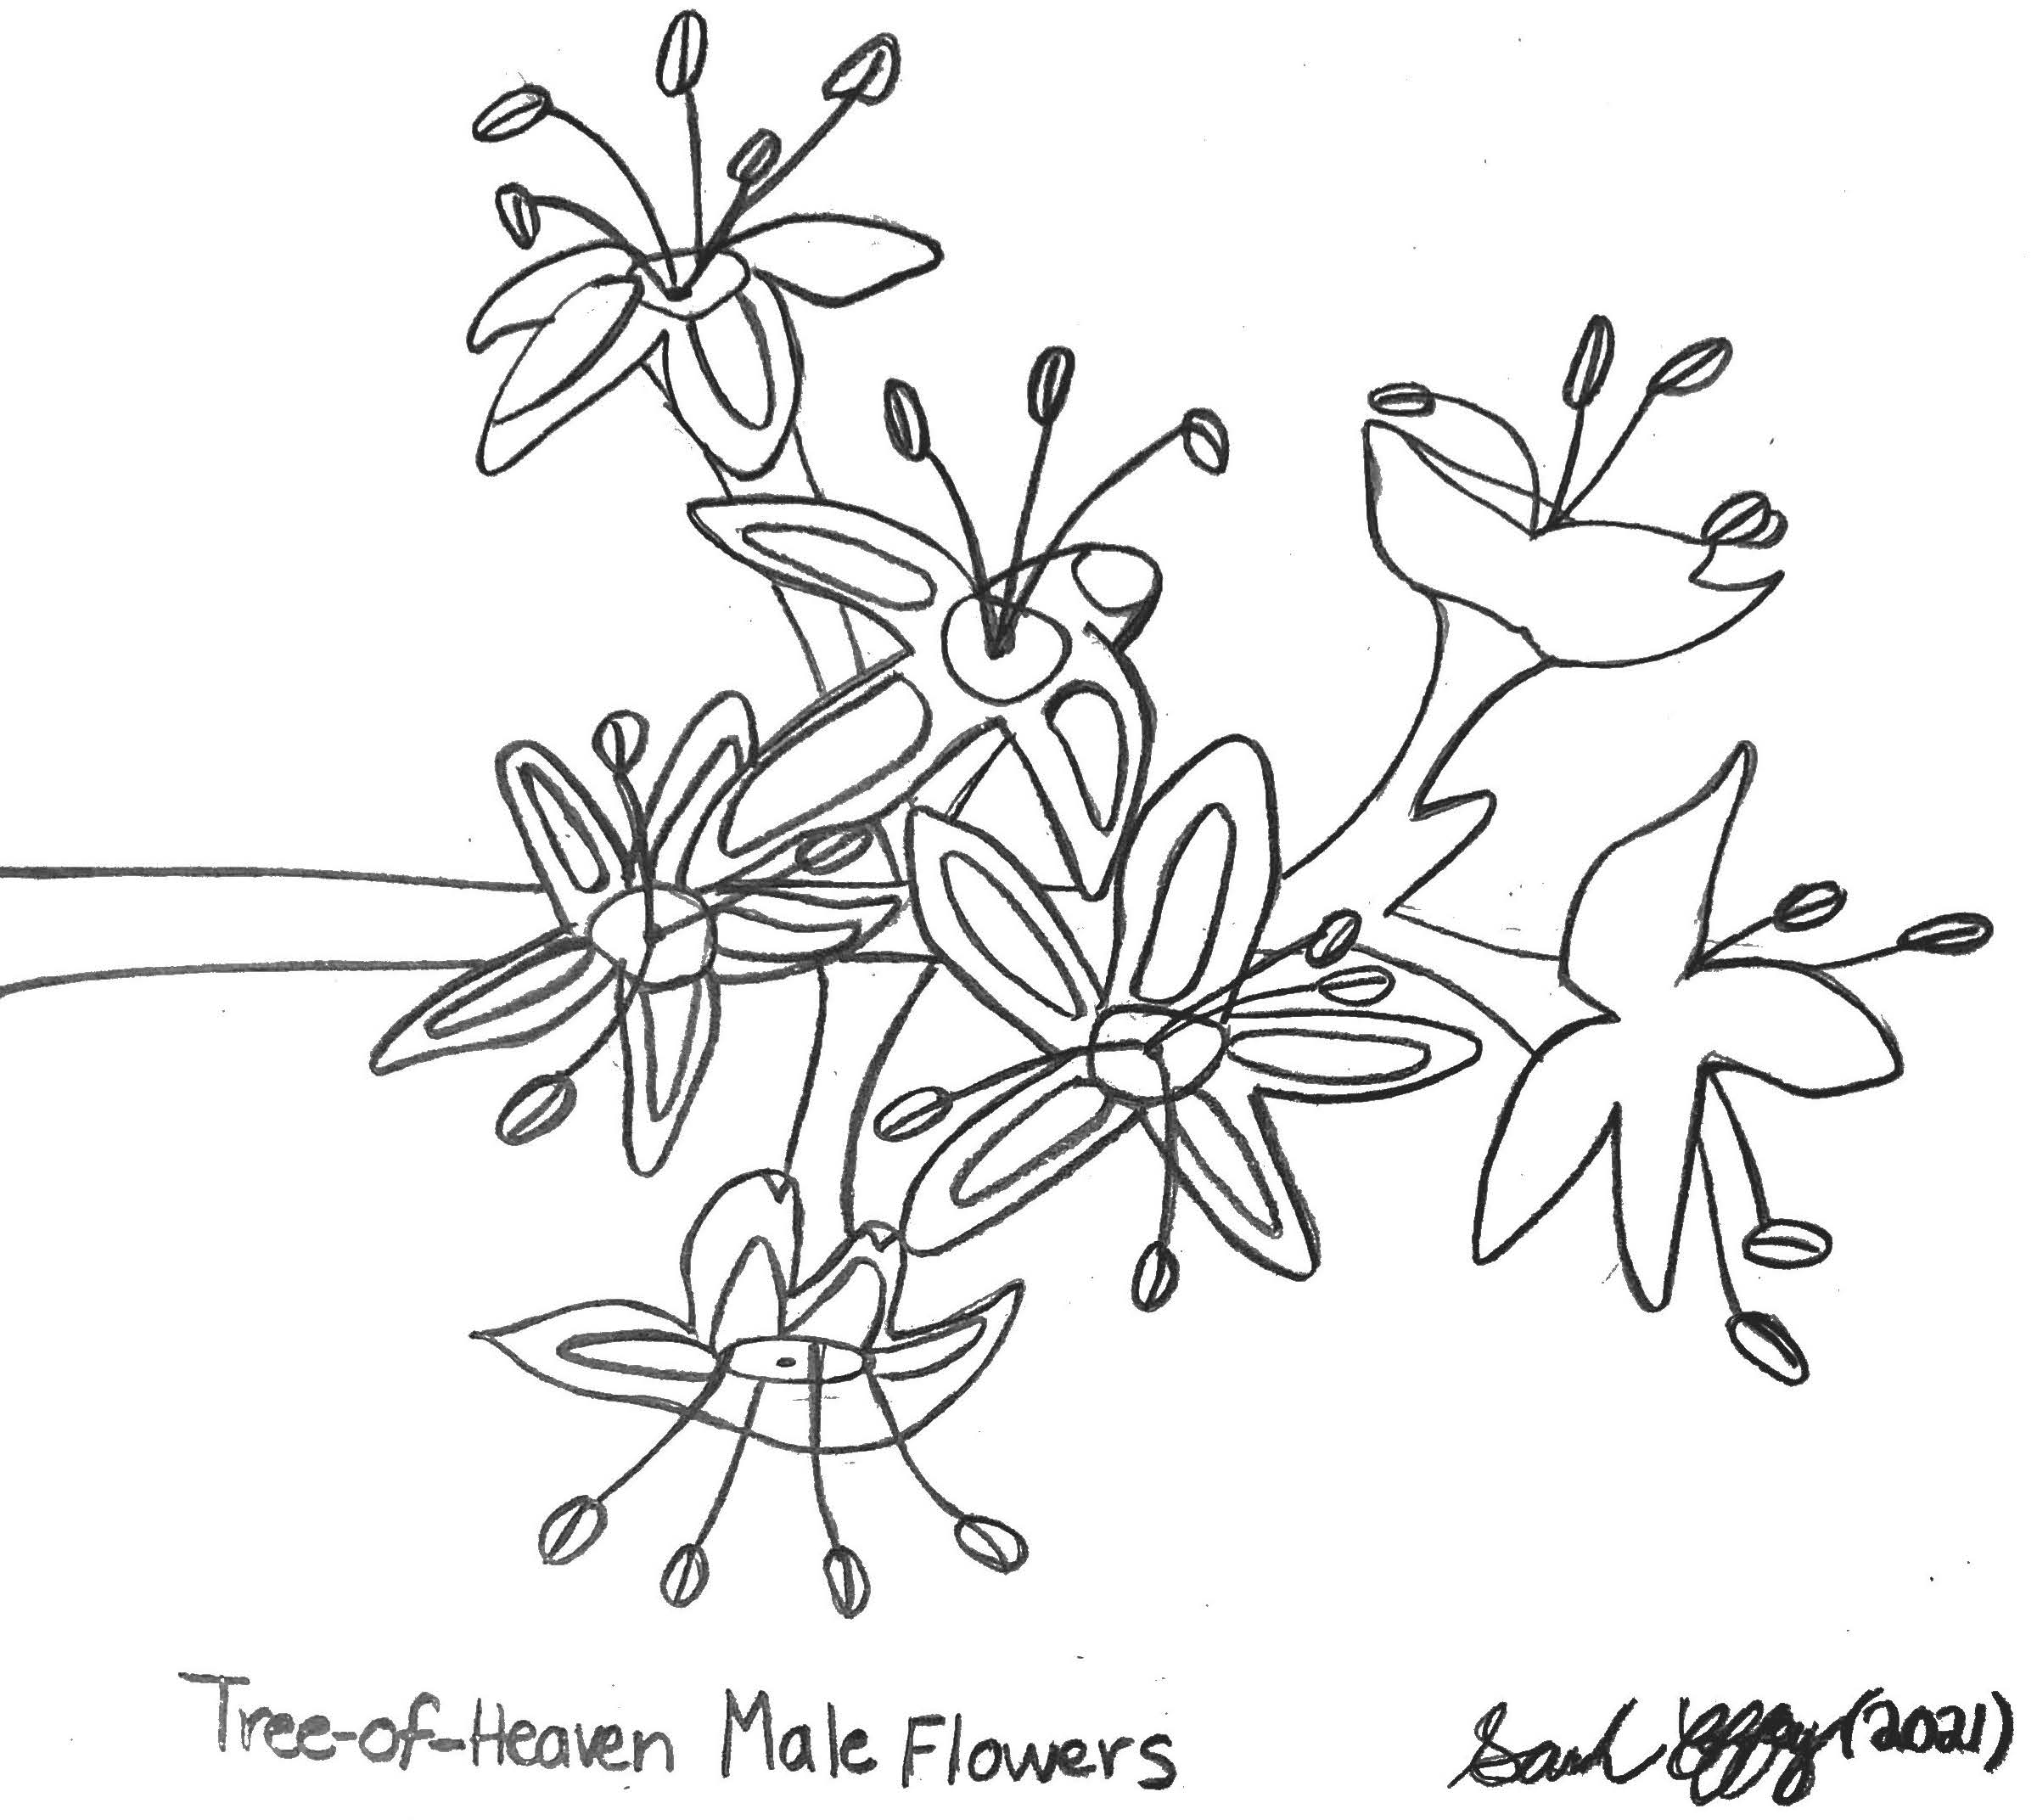 tree-of-heaven male flowers